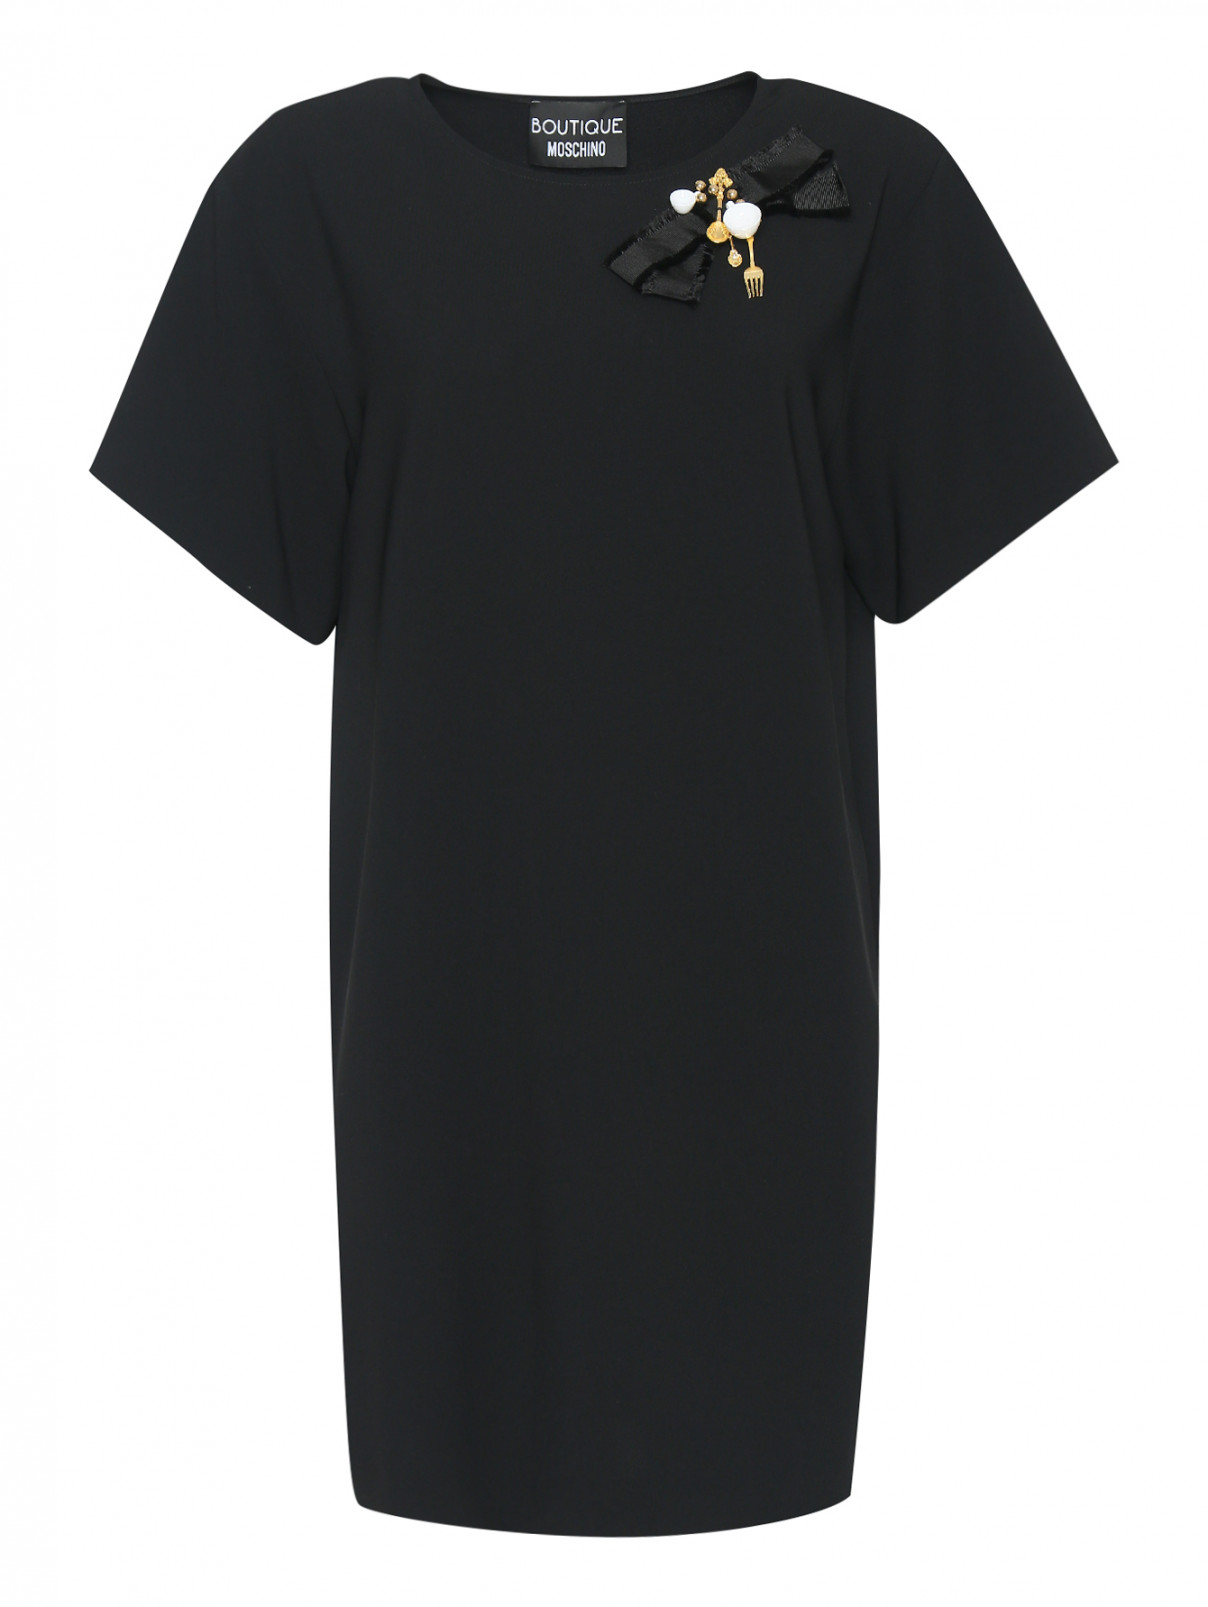 Платье прямого кроя, с декоративным бантом Moschino Boutique  –  Общий вид  – Цвет:  Черный